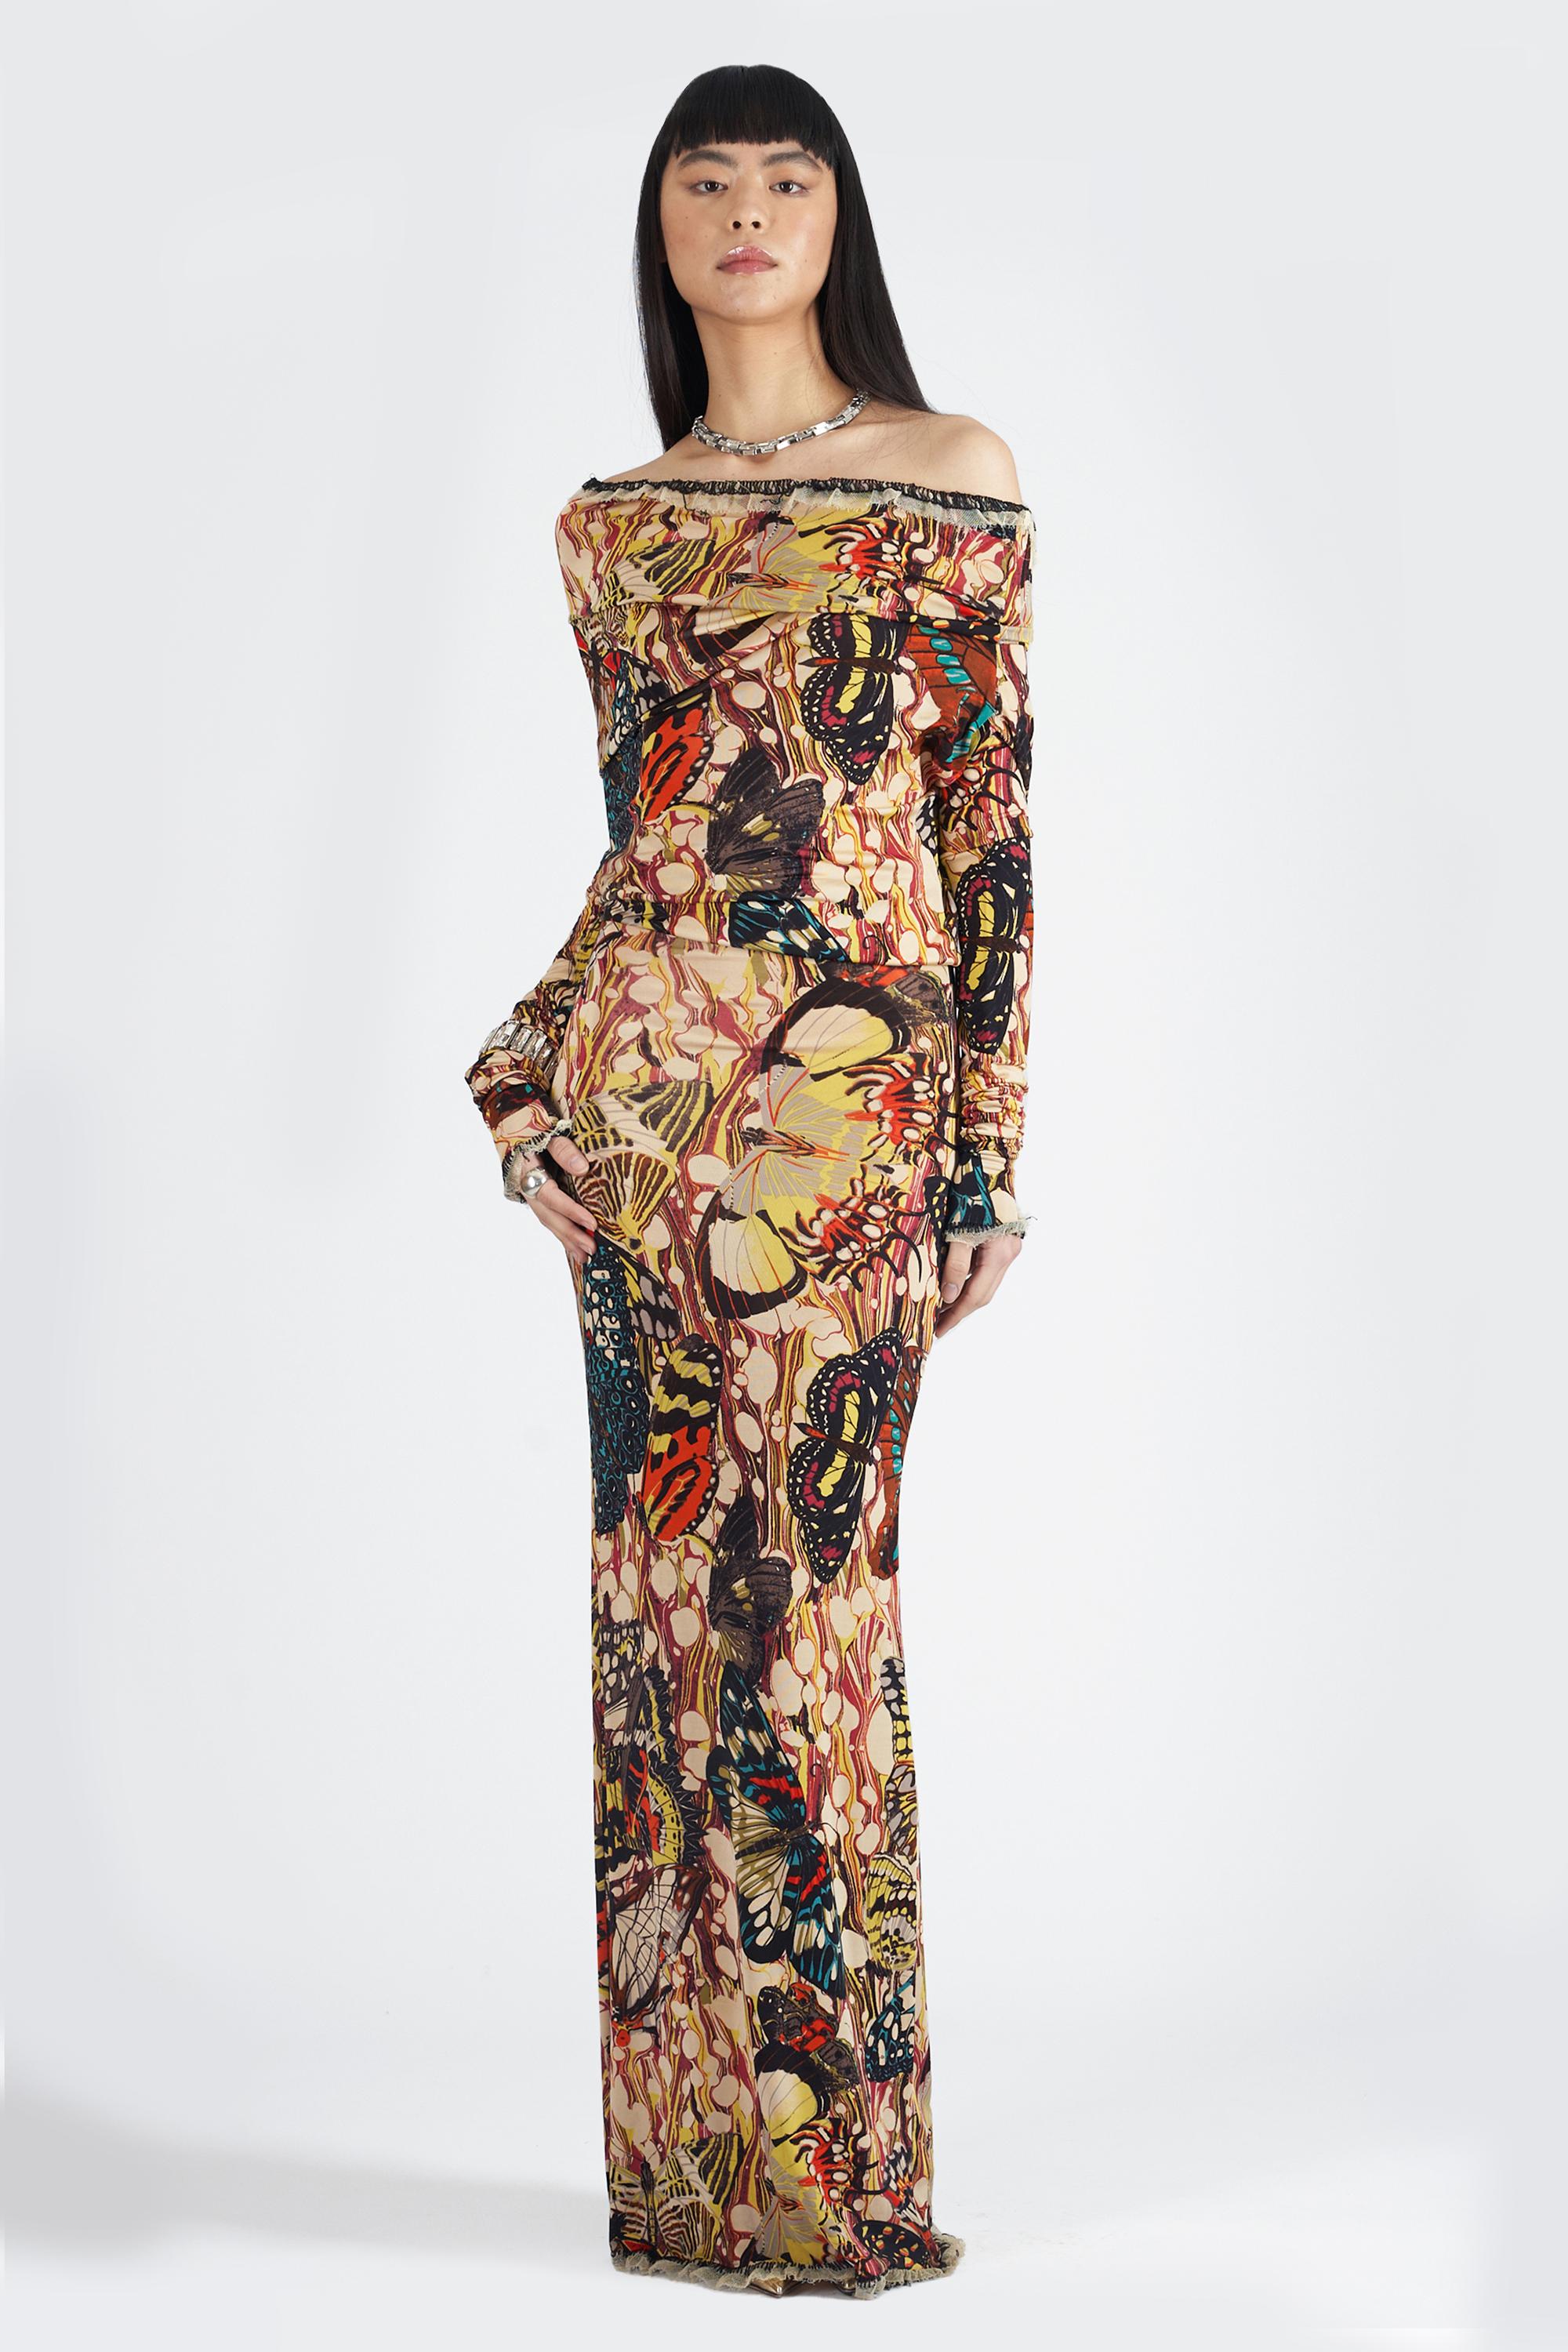 Women's Jean Paul Gaultier Vintage S/S 2003 Hooded Butterfly Maxi Dress